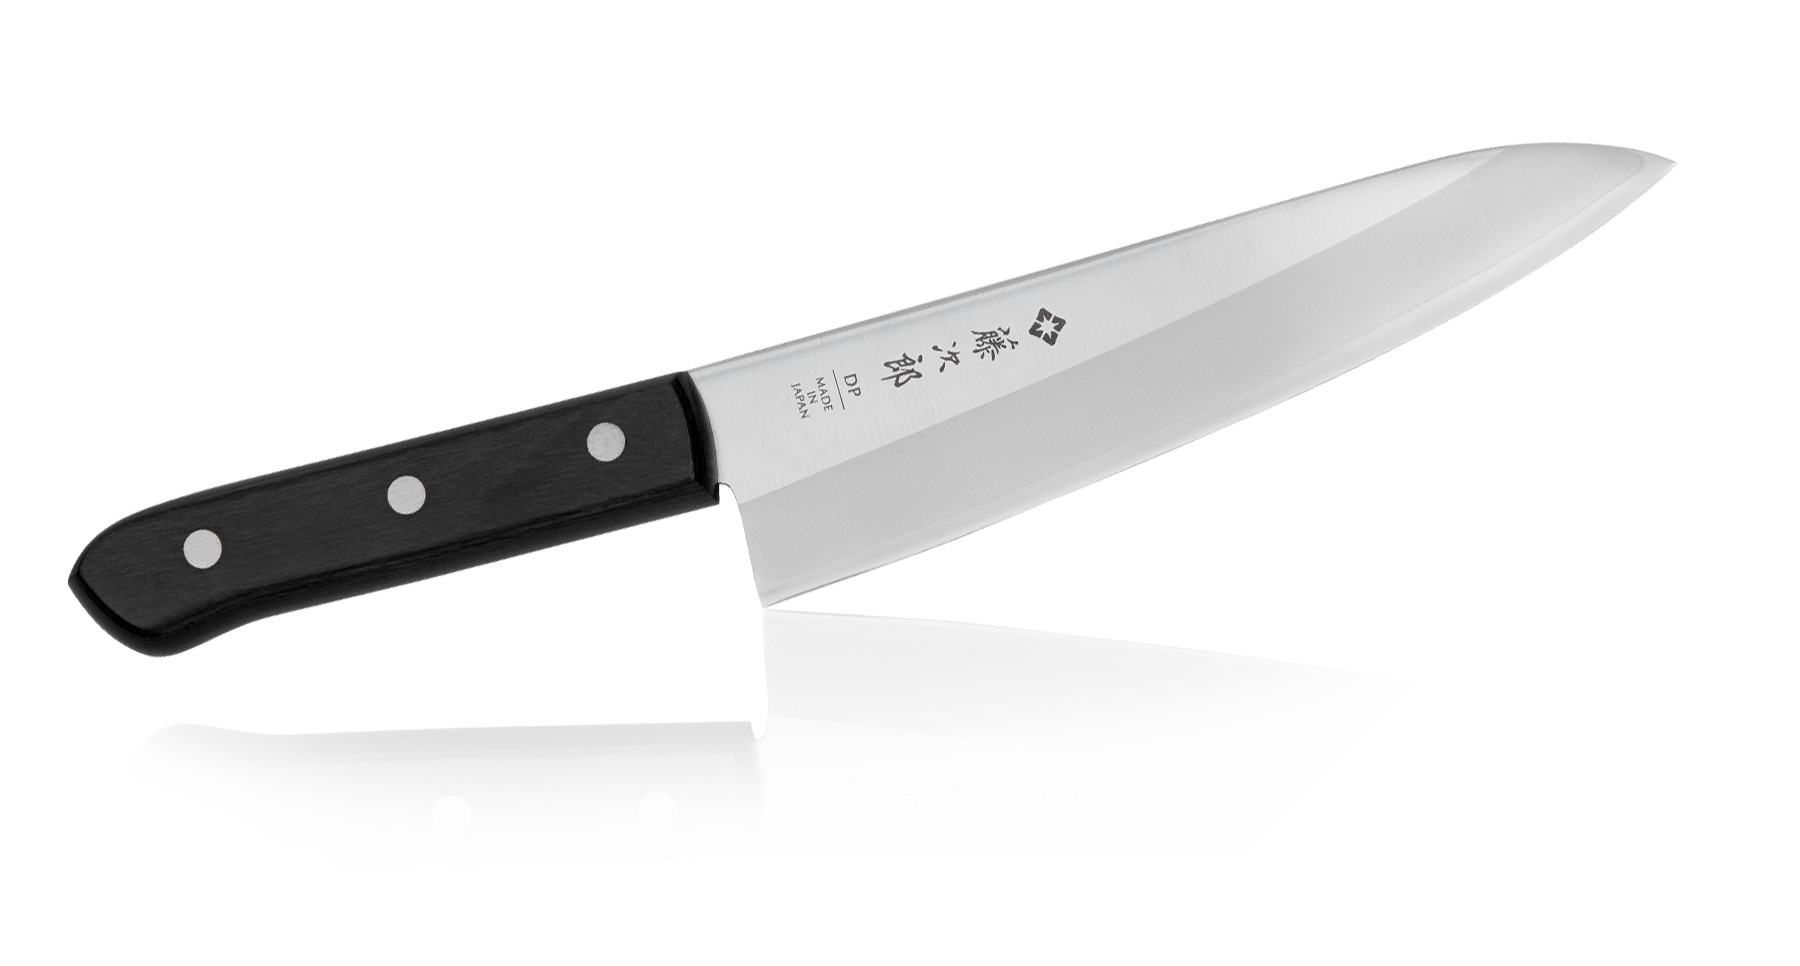 Juego De Cuchillos Para Cocina Acero Japoneses Profesional Chef 10